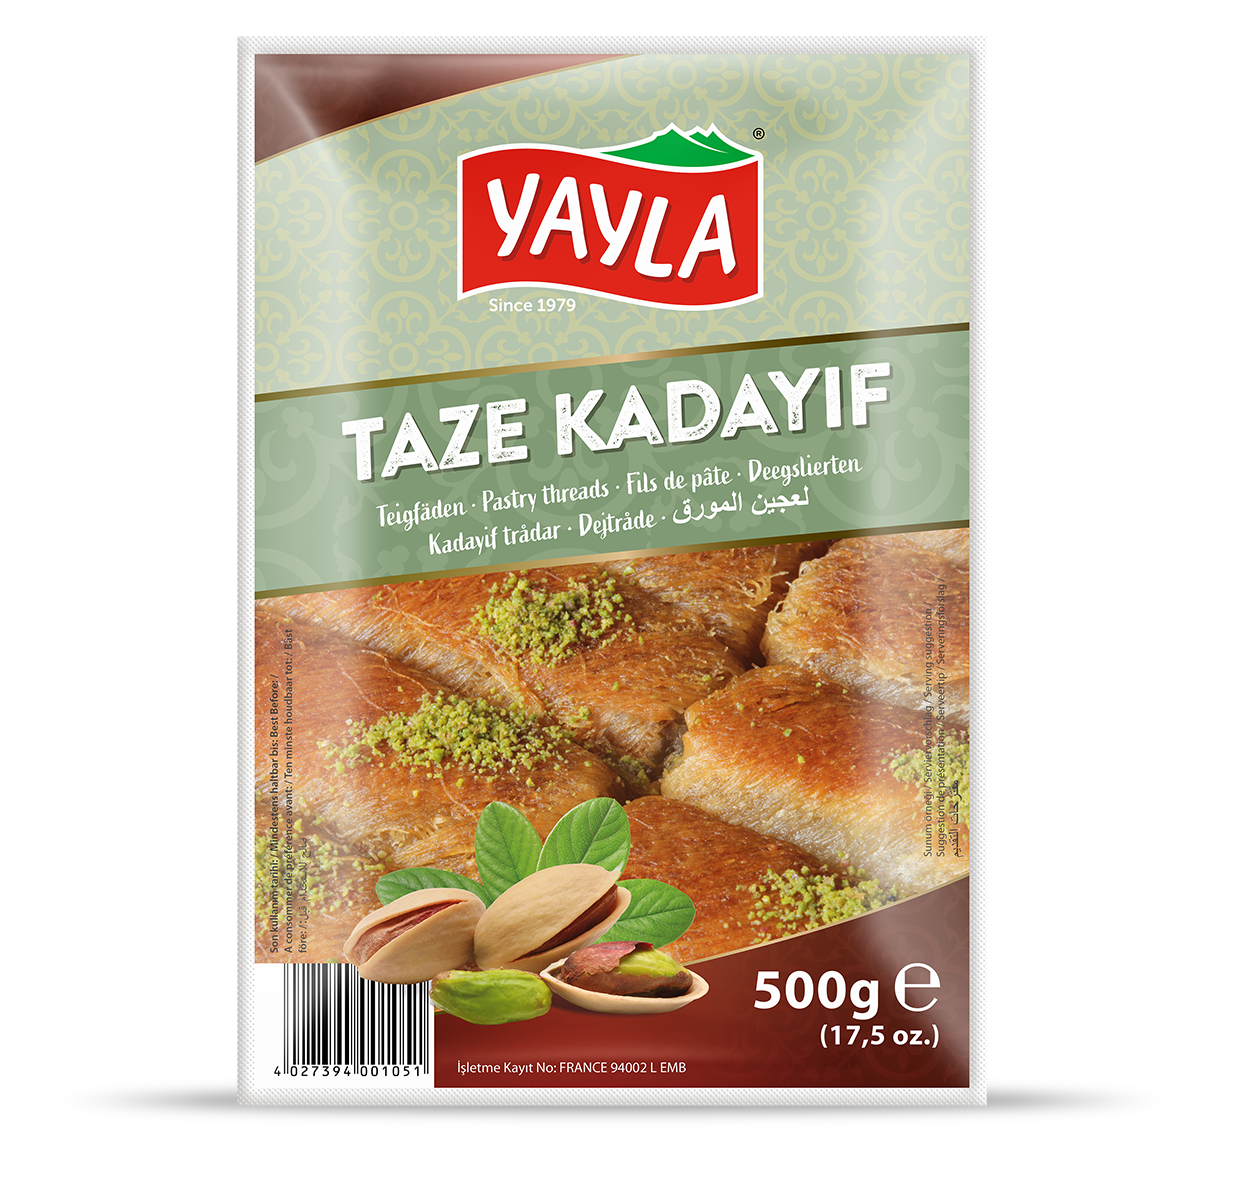 TAZE KADAYIF